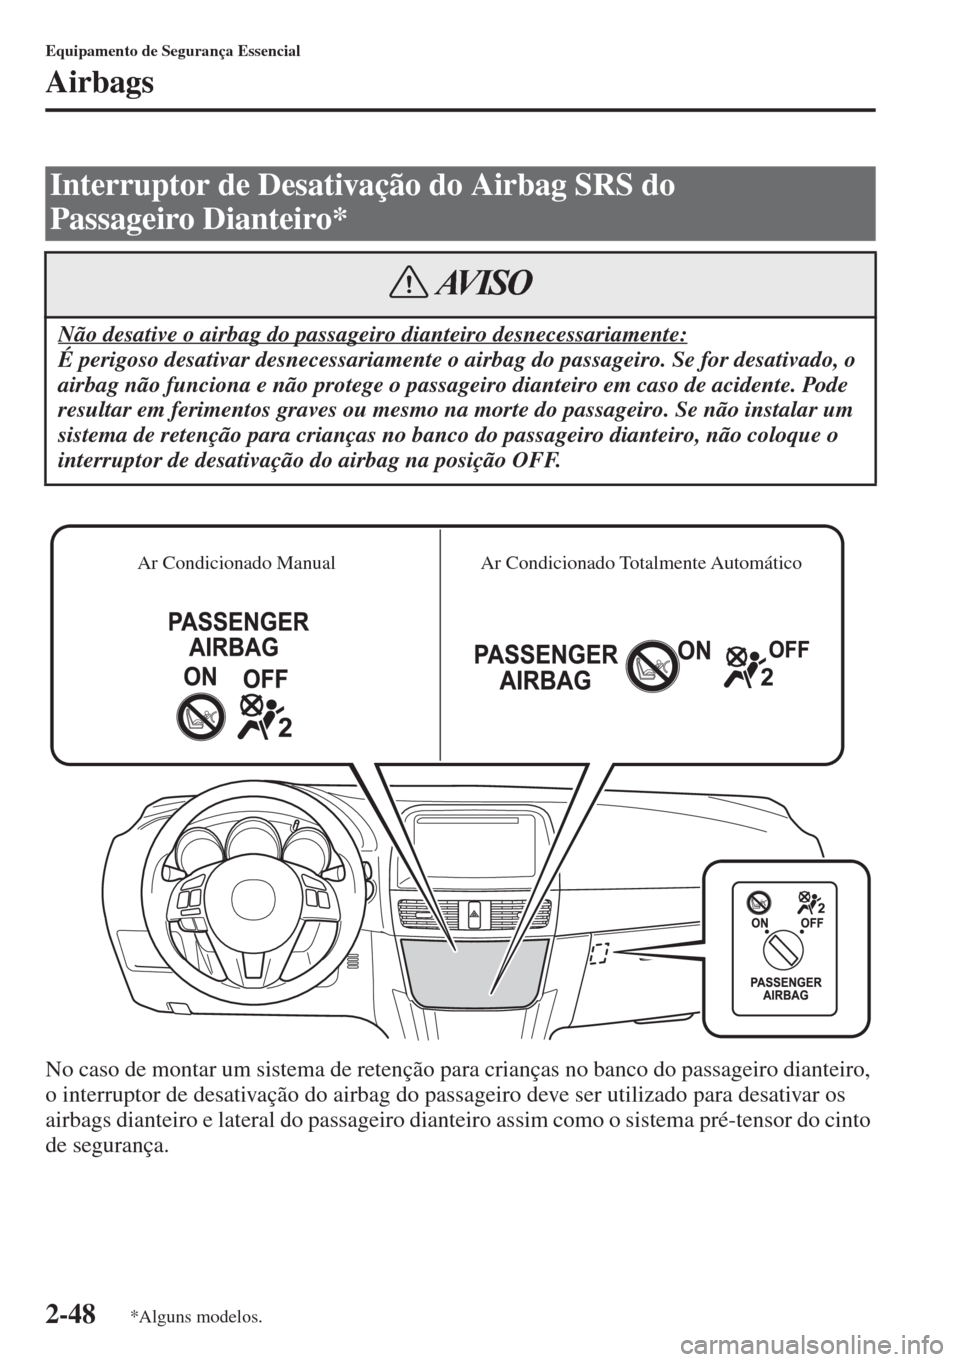 MAZDA MODEL CX-5 2015  Manual do proprietário (in Portuguese) 2-48
Equipamento de Segurança Essencial
Airbags
No caso de montar um sistema de retenção para crianças no banco do passageiro dianteiro, 
o interruptor de desativação do airbag do passageiro dev